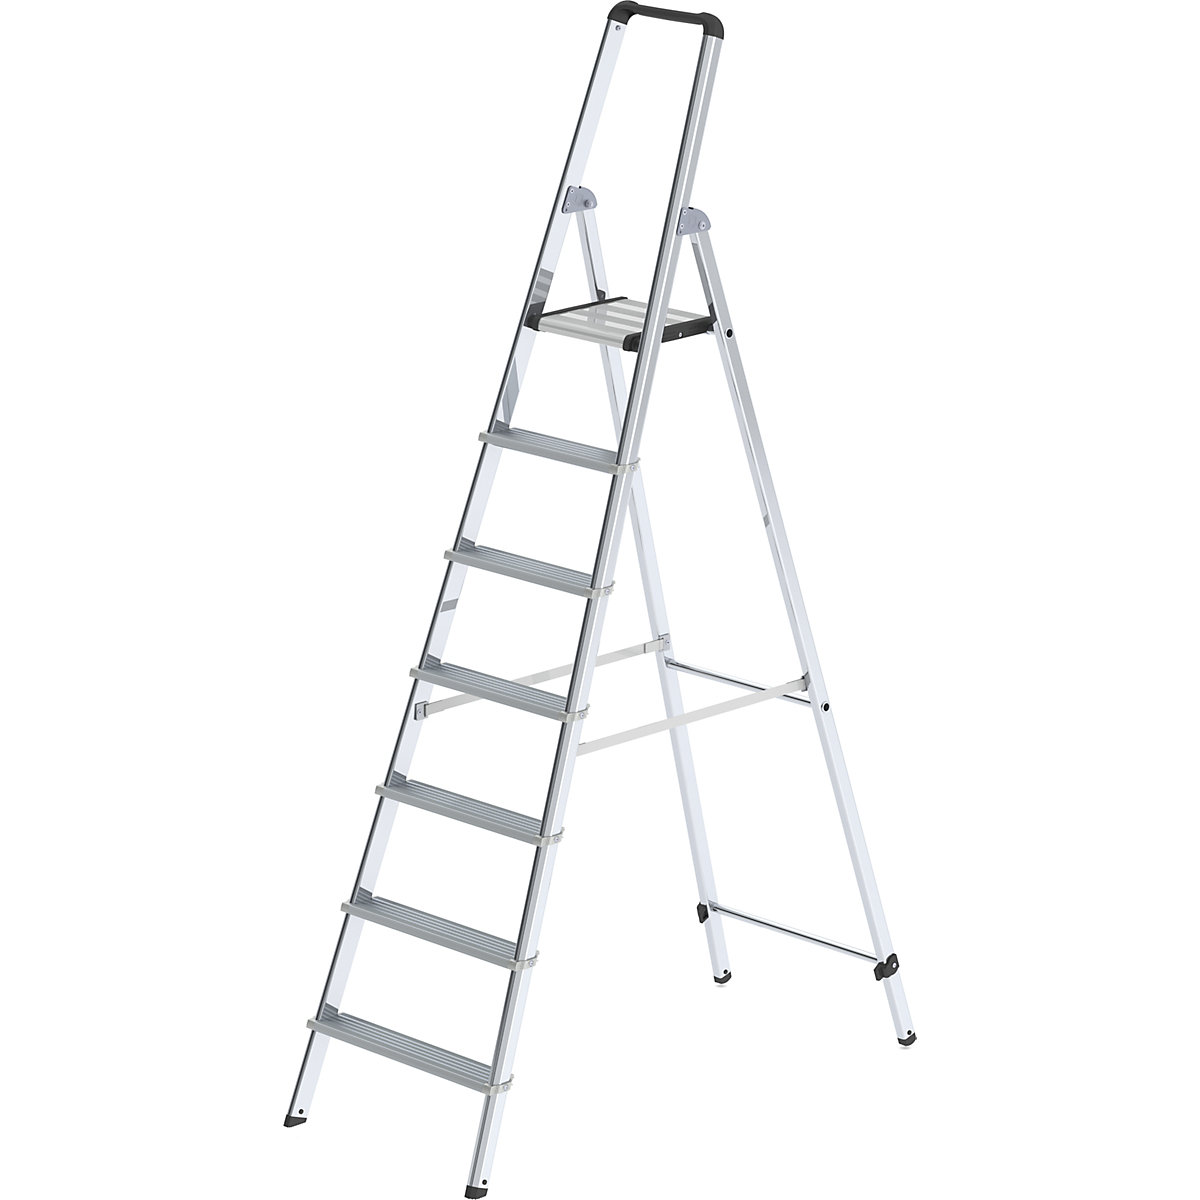 MUNK – Escalera tipo tijera de peldaños planos de aluminio, de ascenso por un lado, con larguero ergonómico y bandeja, 7 peldaños